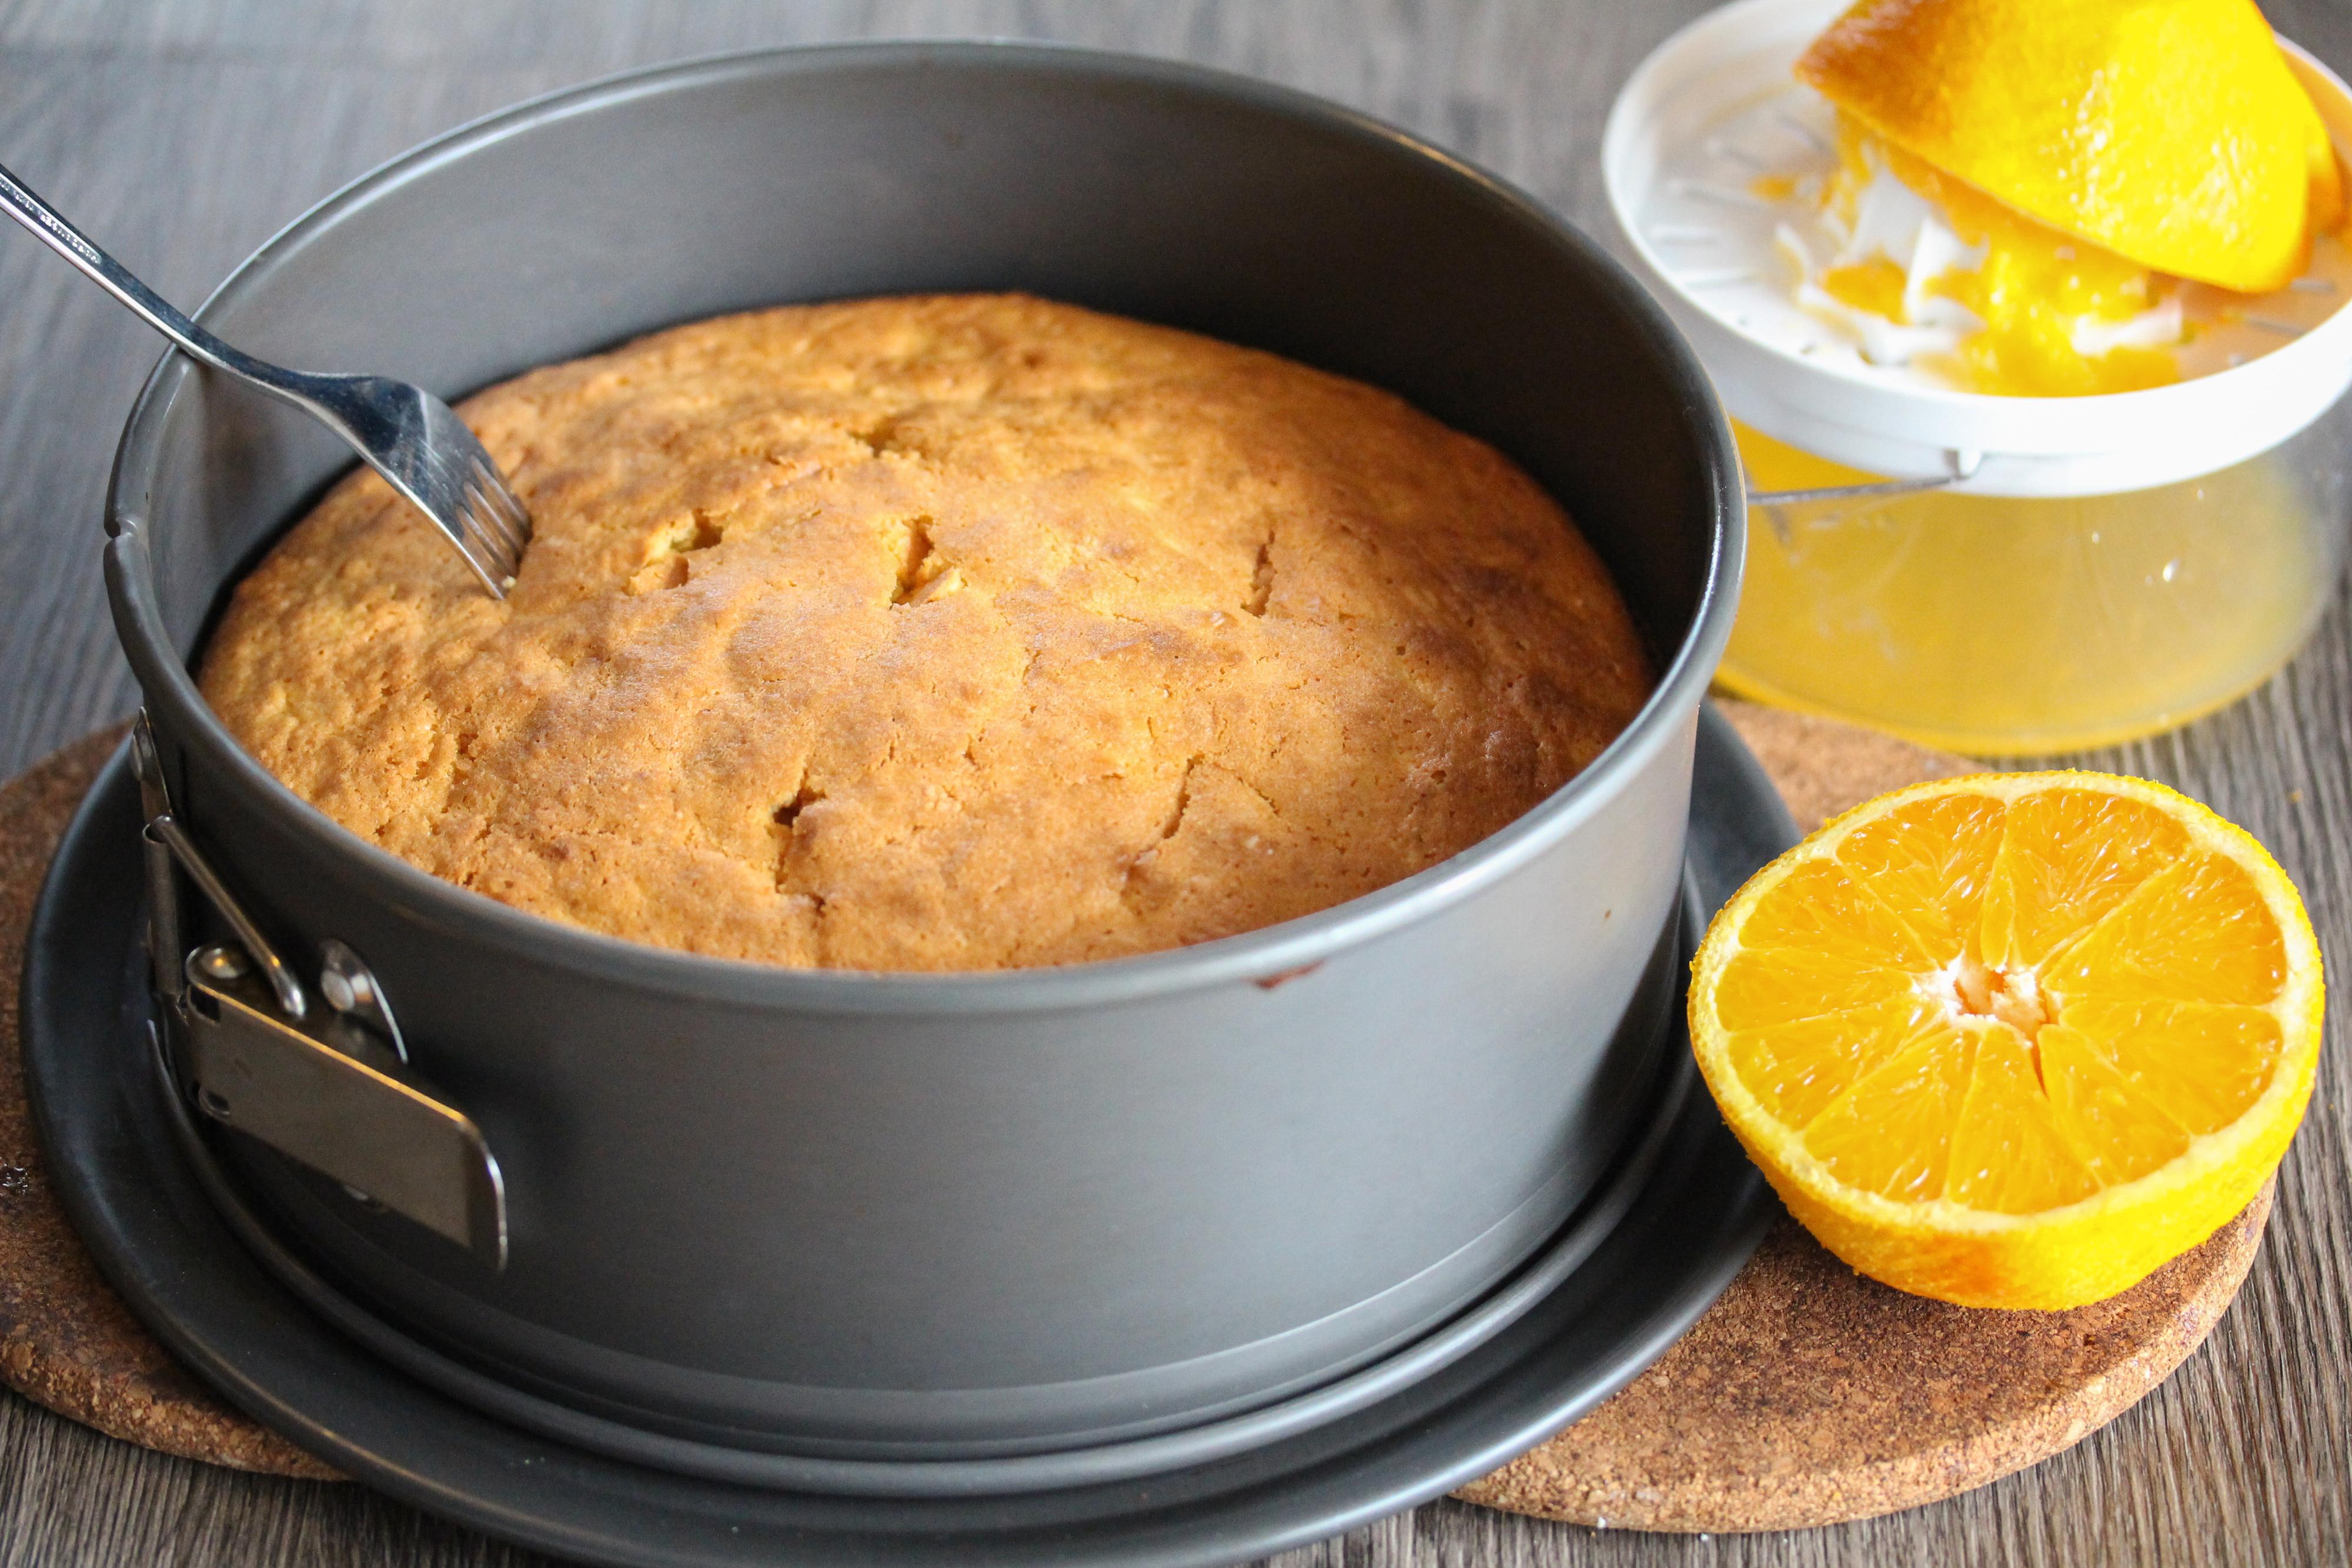 Stikk hull i den nystekte kaken med en gaffel. Press saften ut av appelsinen og hell dette over den varme kaken. La kaken stå og avkjøles i formen i 30 minutter, slik at saften trekker godt inn i kaken.